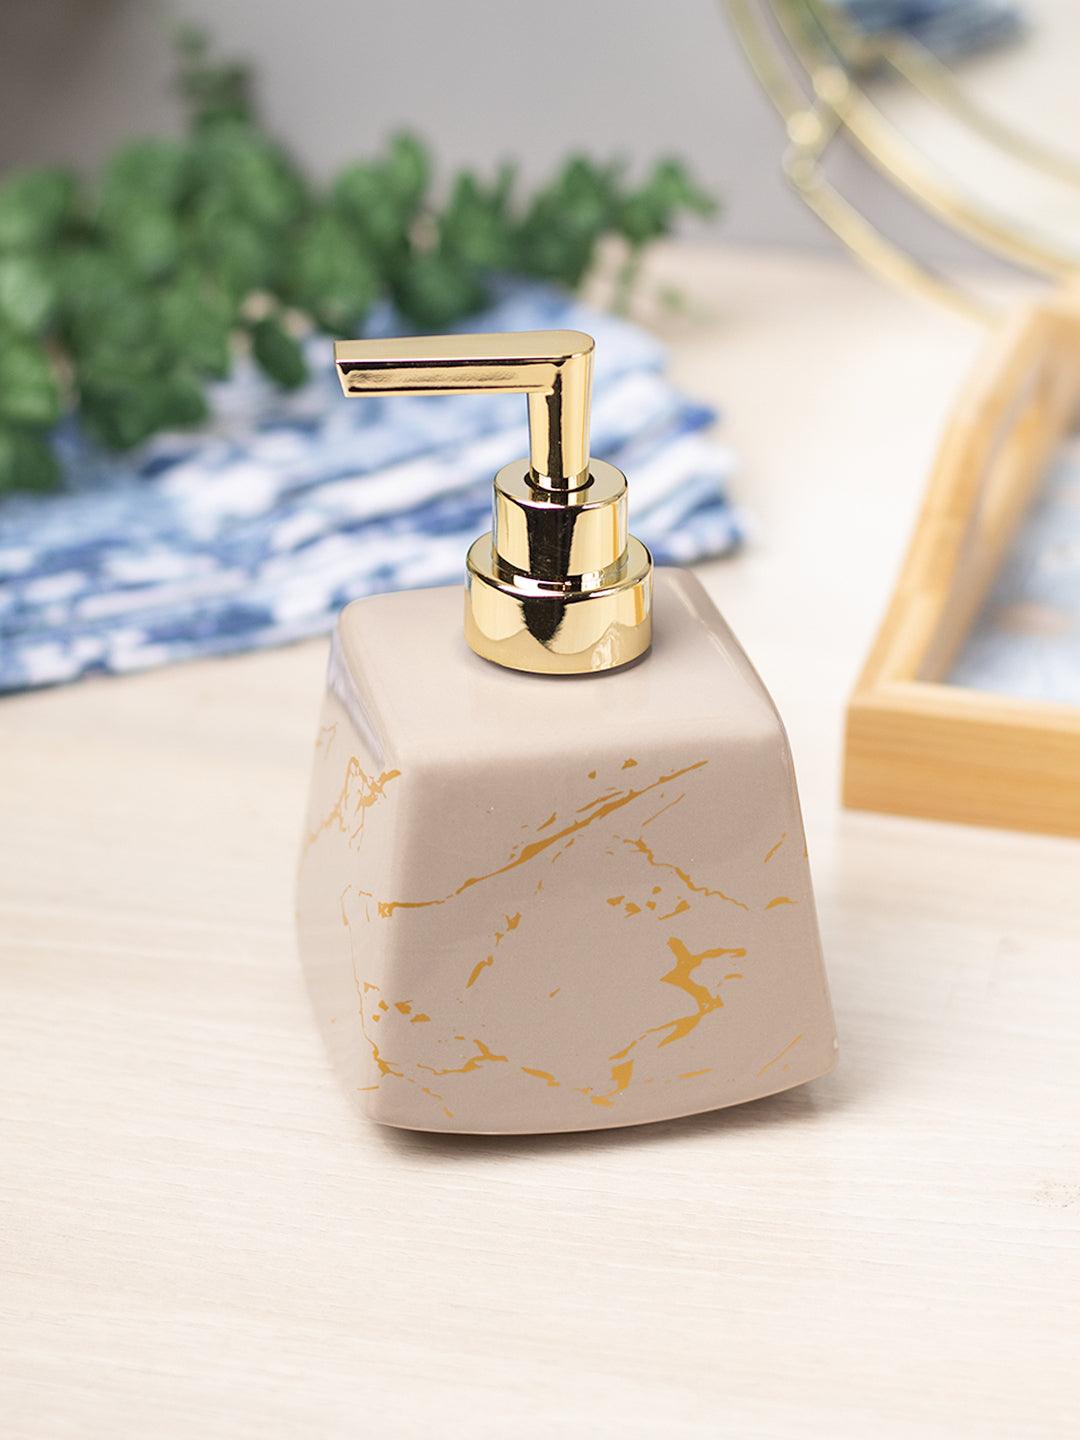 Brown Ceramic Soap Dispenser - Stone Finish, Bath Accessories - 1